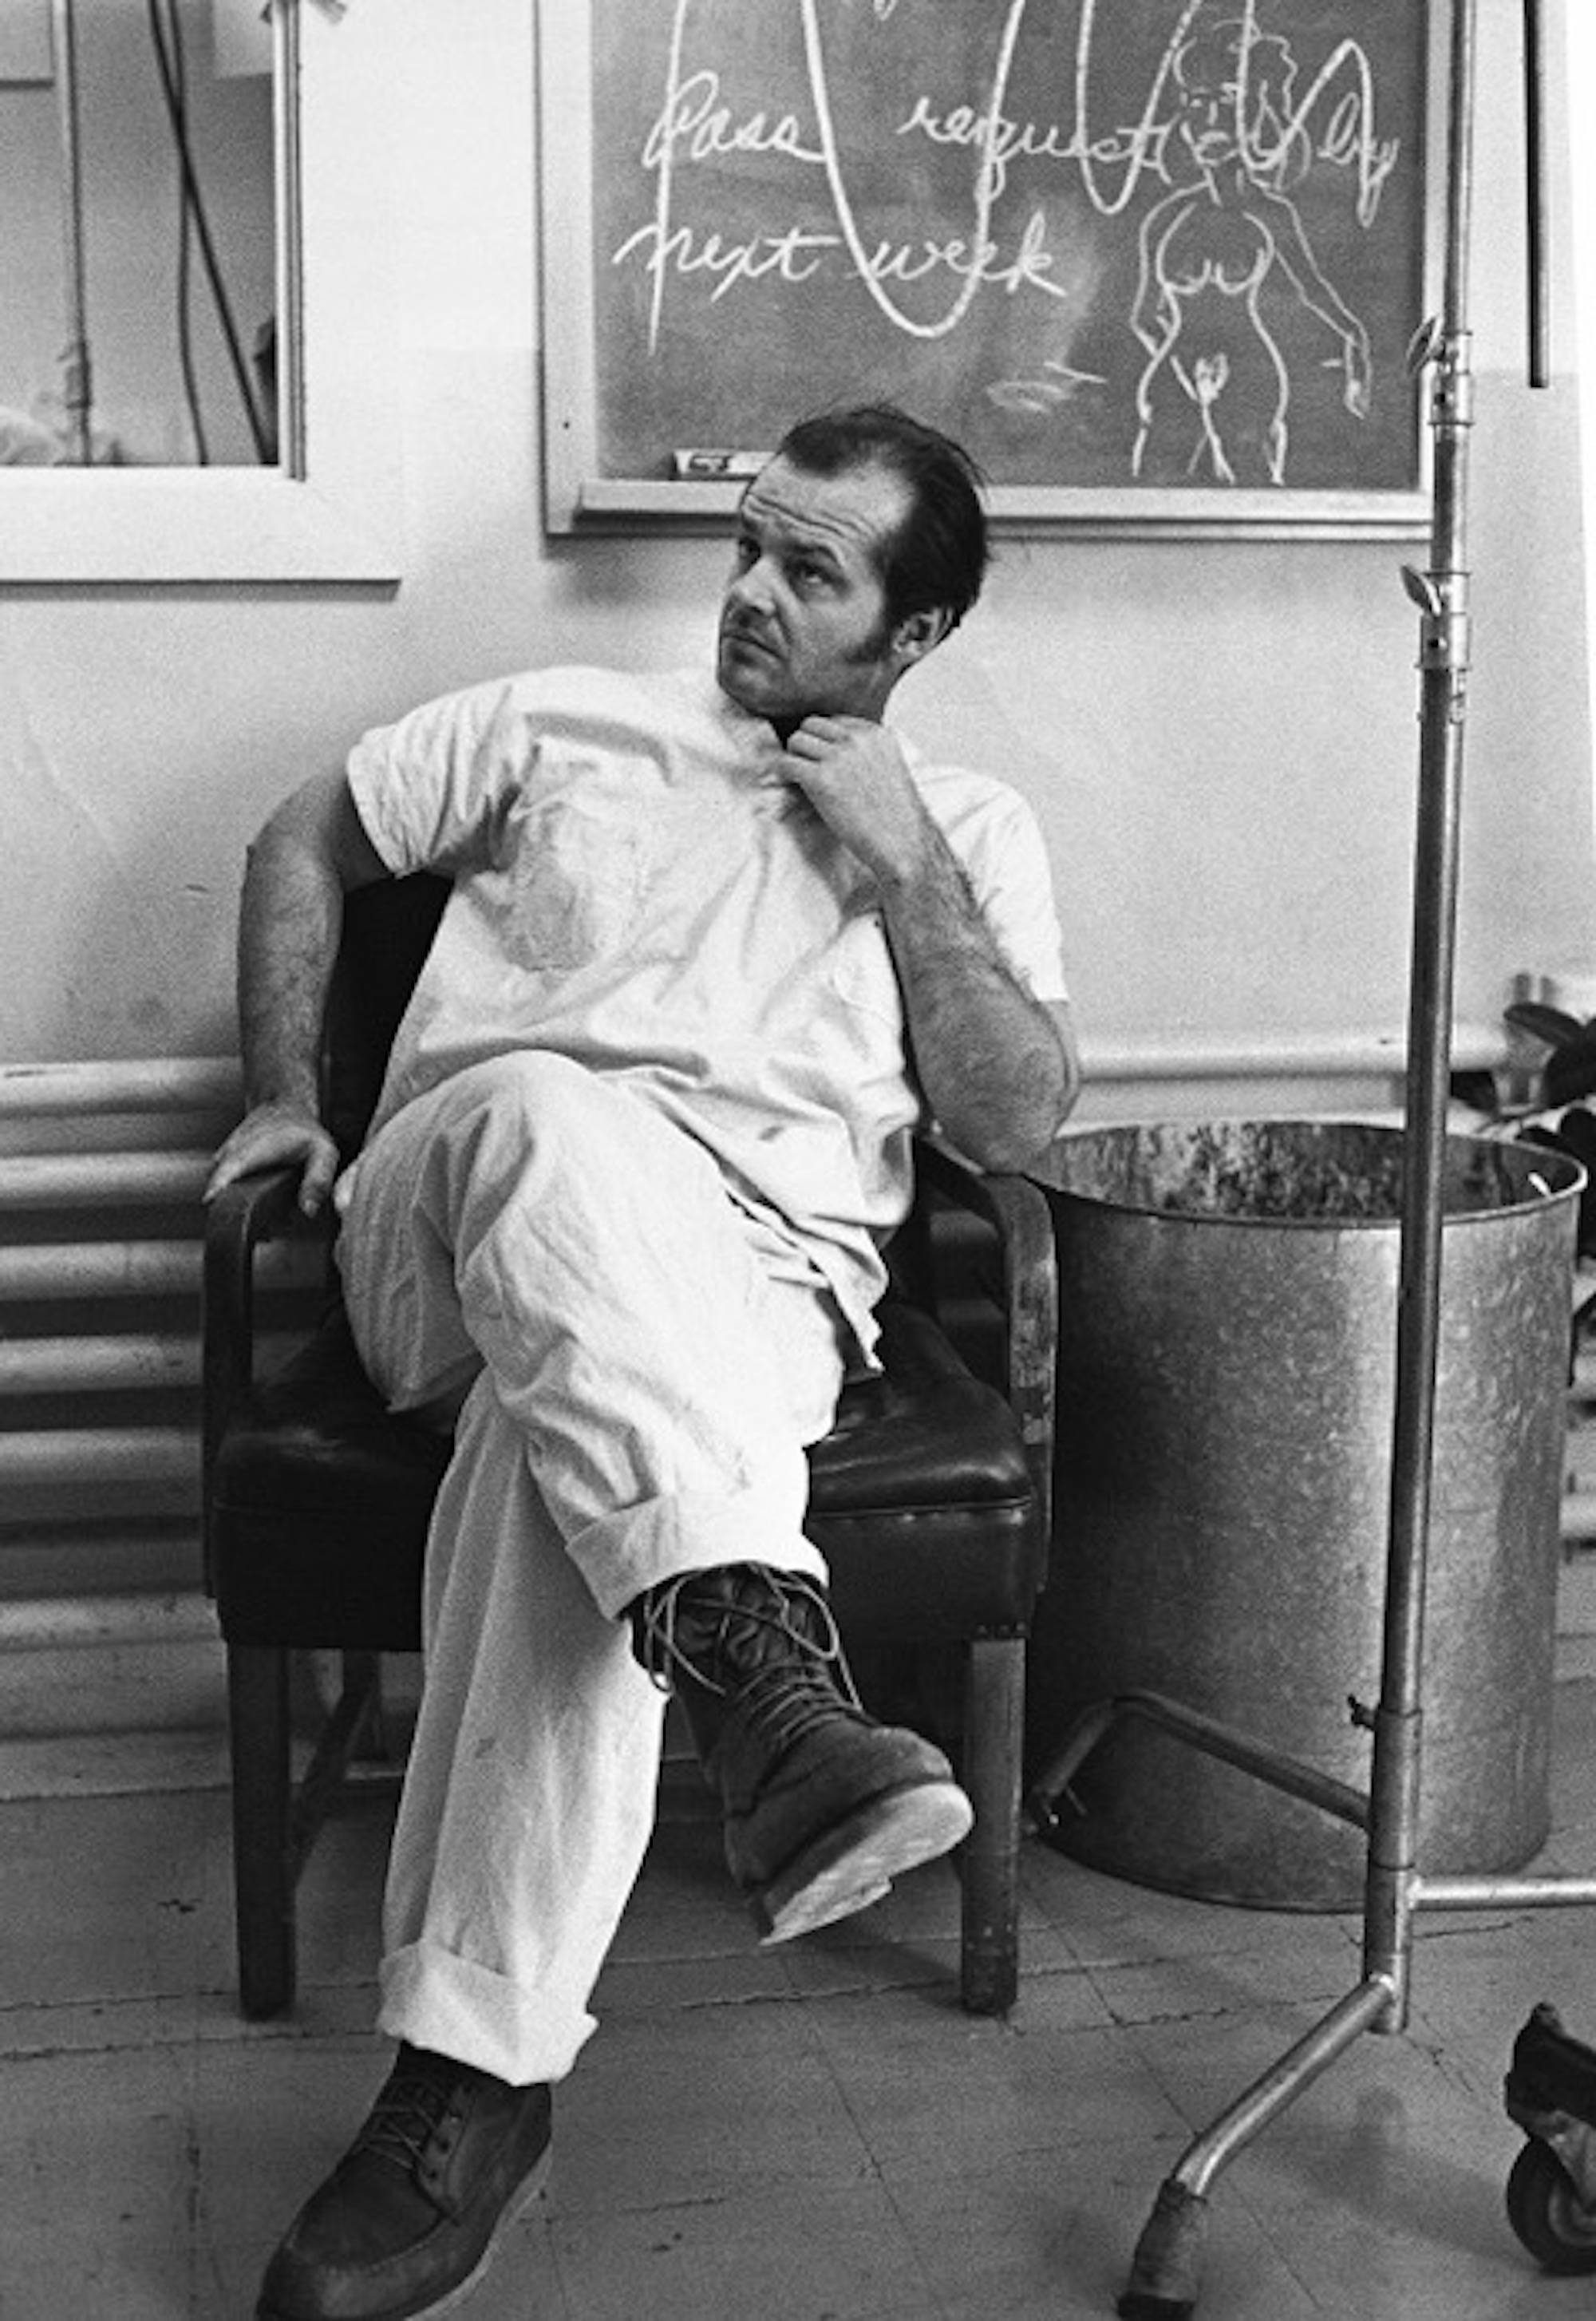 Black and White Photograph Peter Sorel - Jack Nicholson, 1974 dans Vol au-dessus d'un nid de coucou